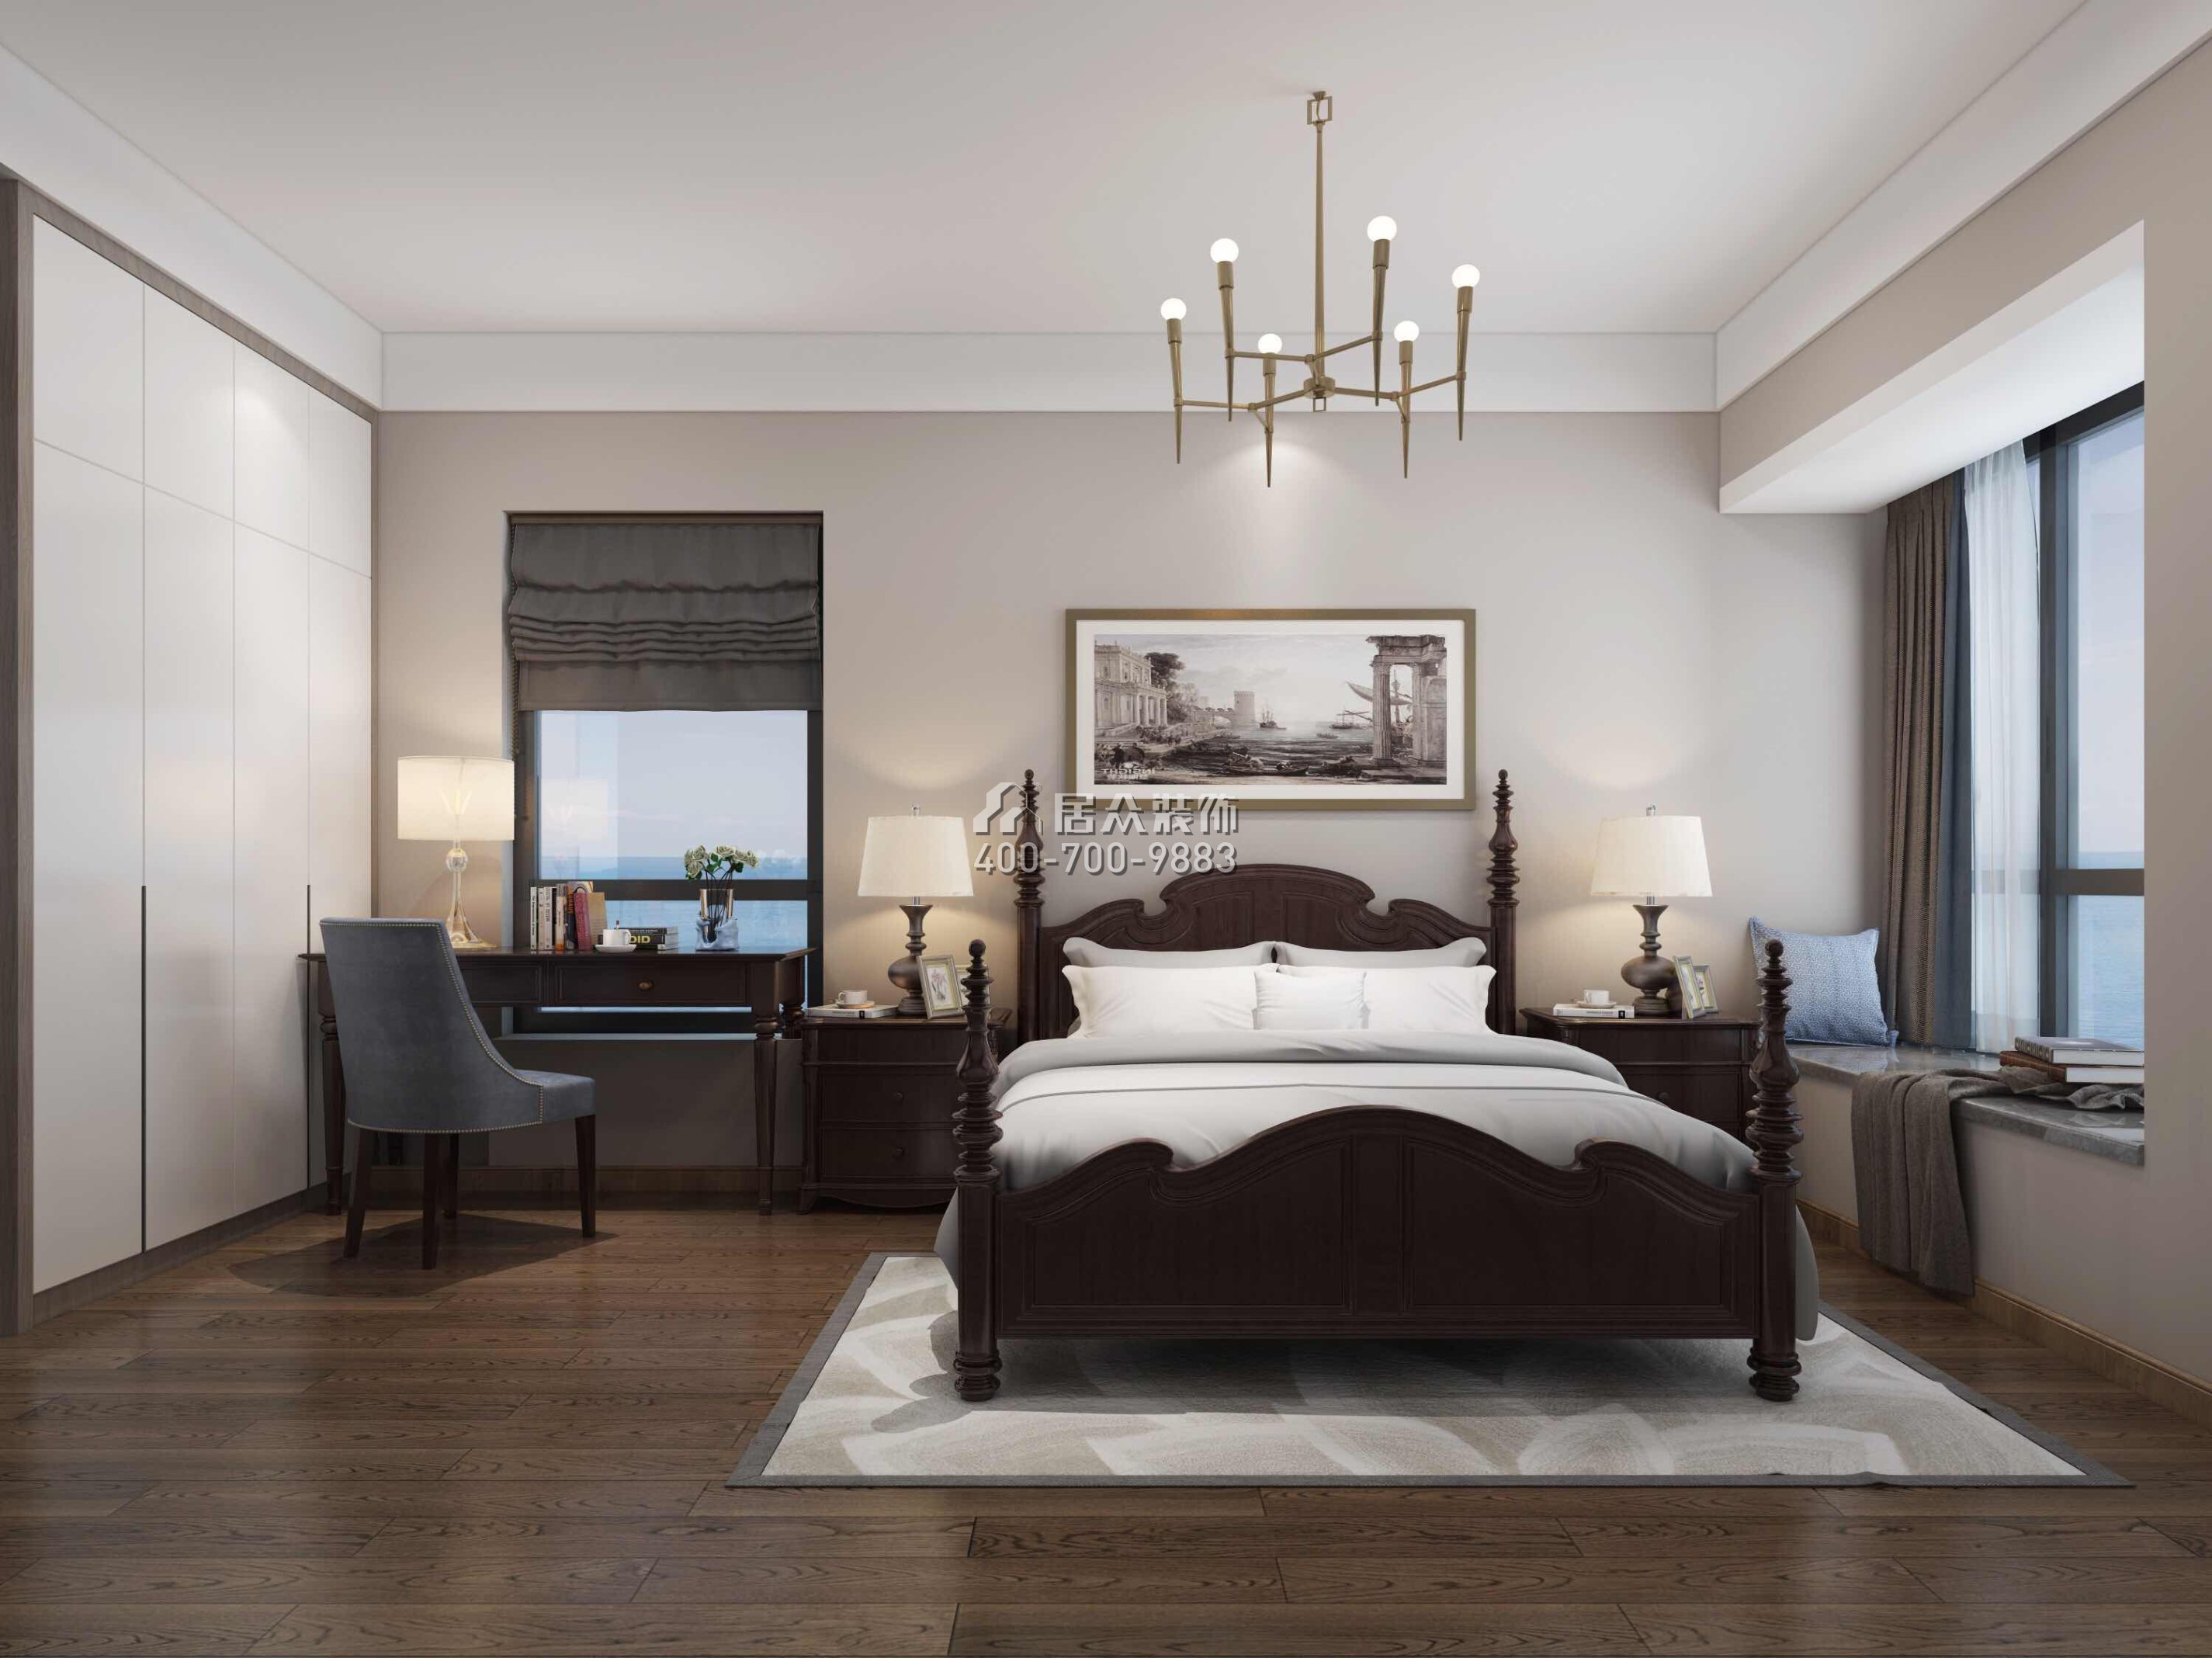 碧海云天200平方米现代简约风格平层户型卧室装修效果图